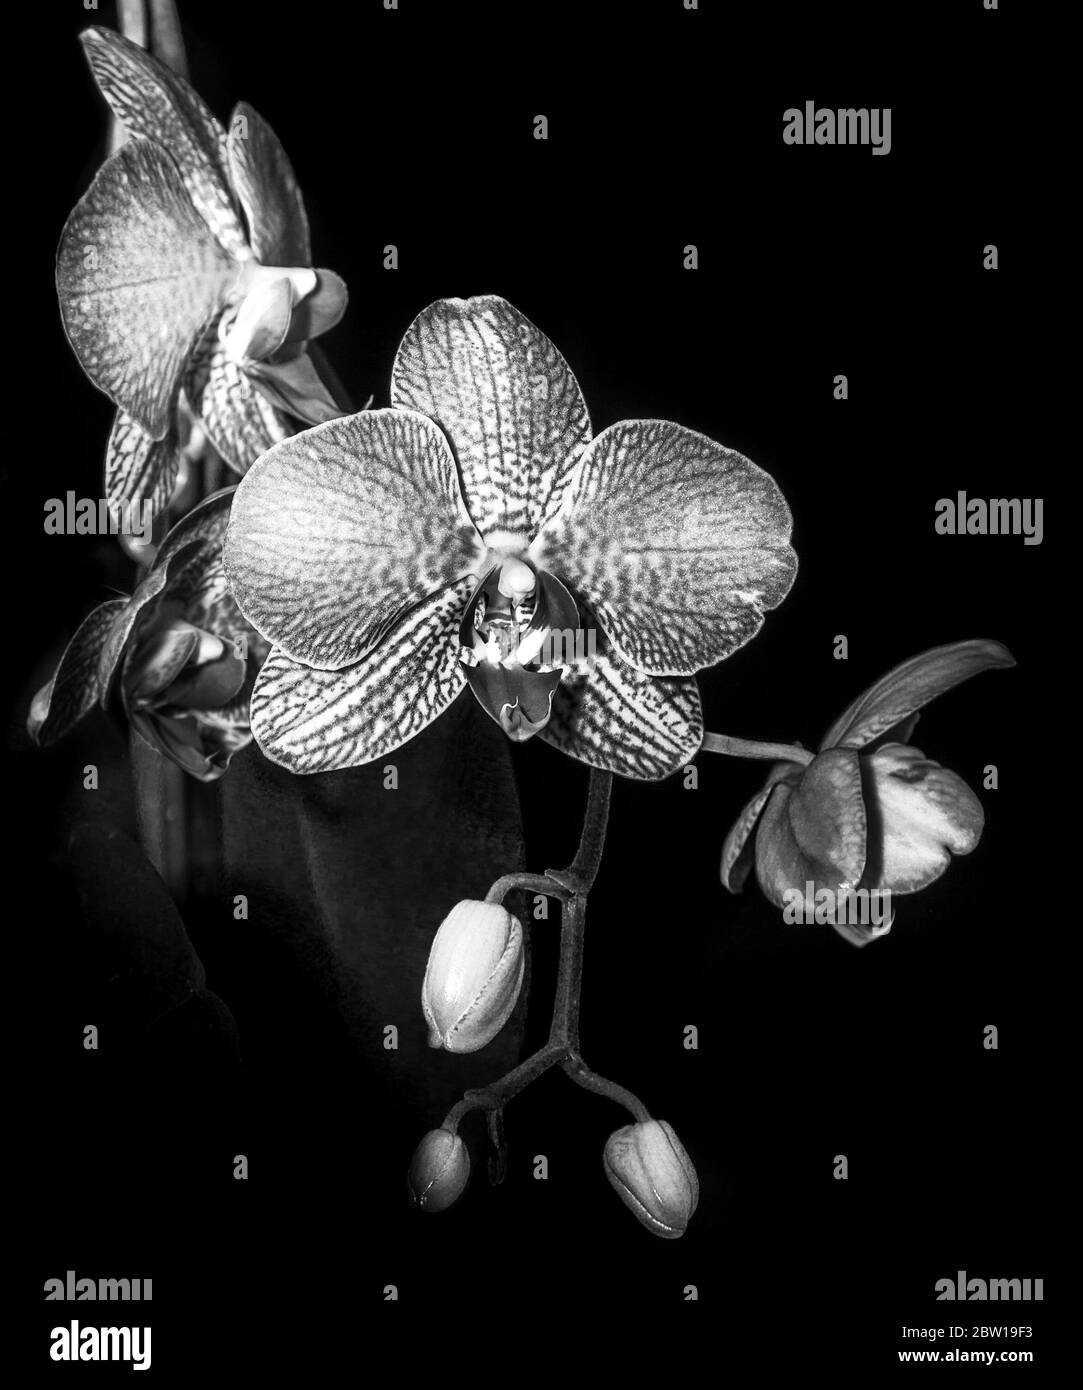 Image de moody d'orchidée noire et blanche Banque D'Images